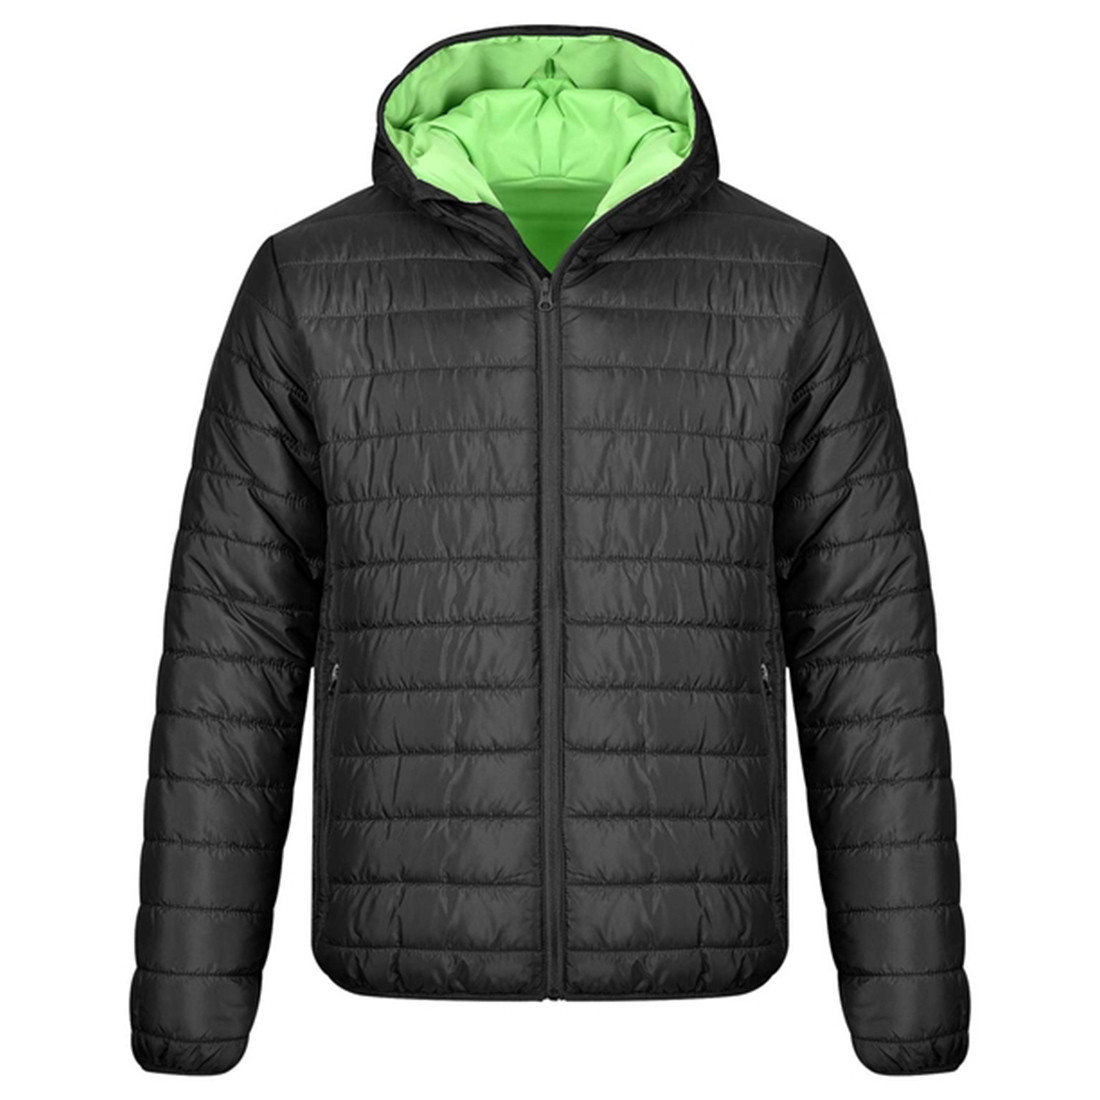 APOLLO Jacket - Safetywear